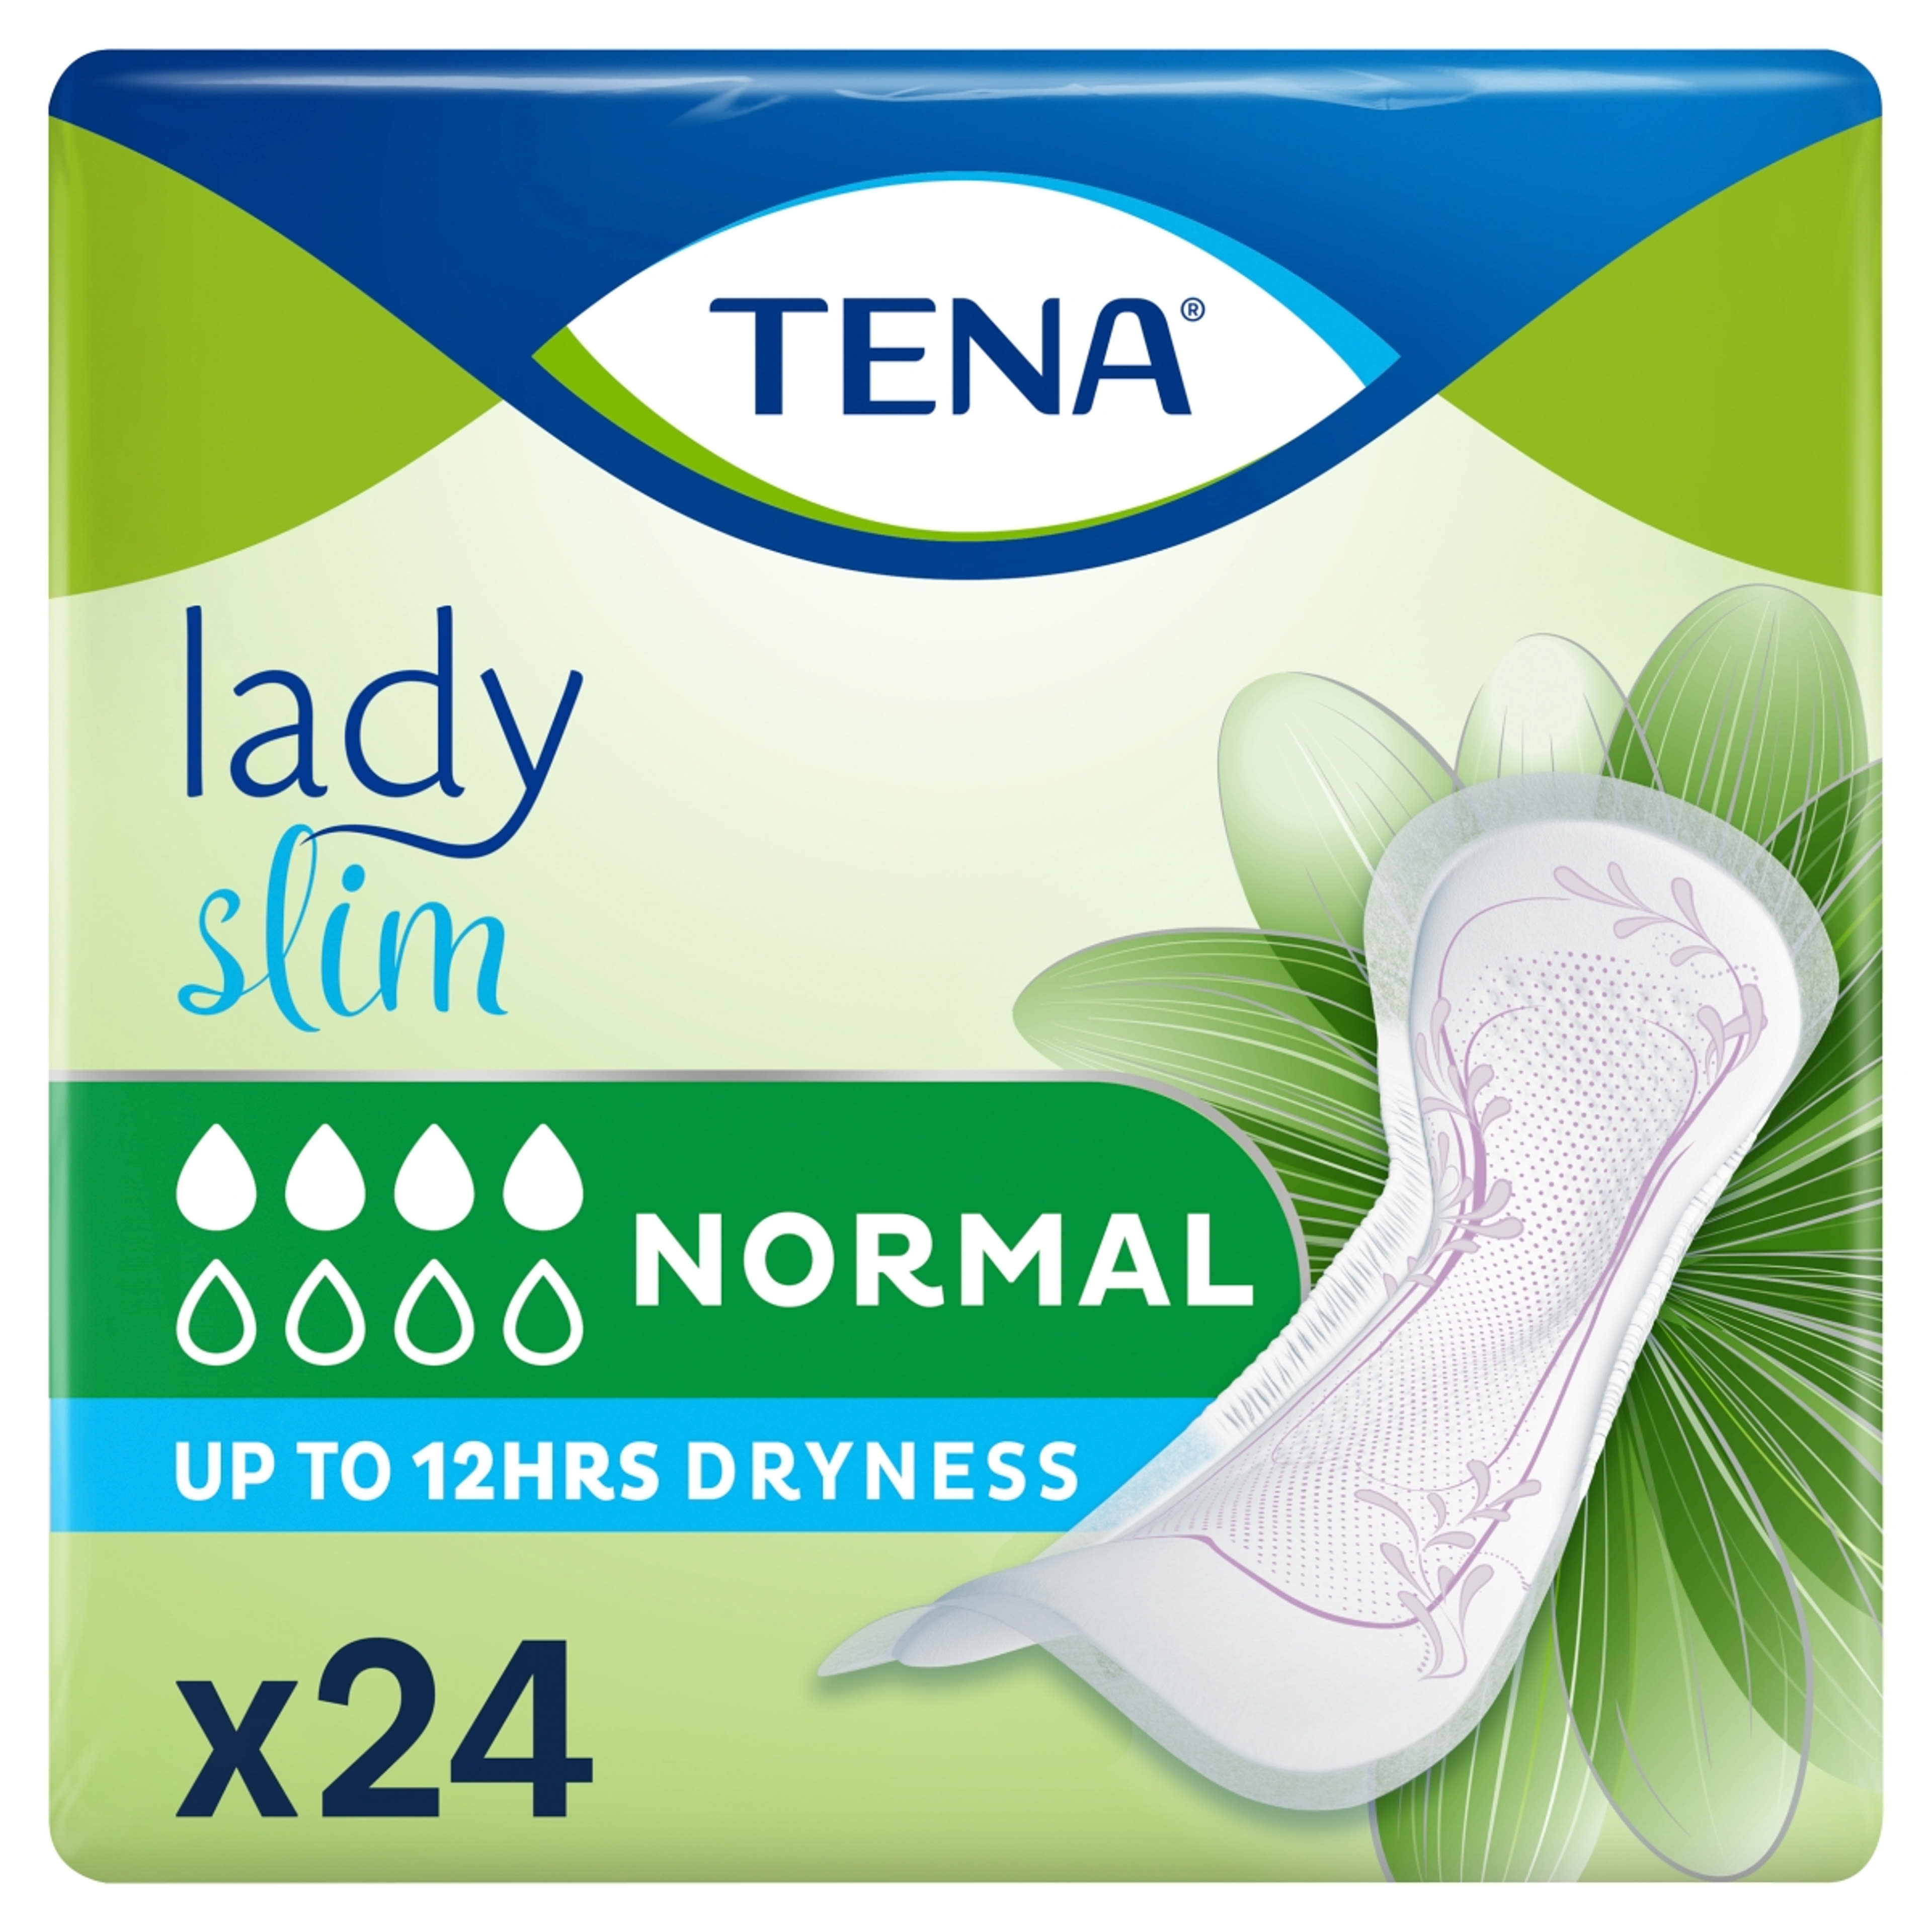 Tena lady slim normál inkontinencia betét - 24 db-5